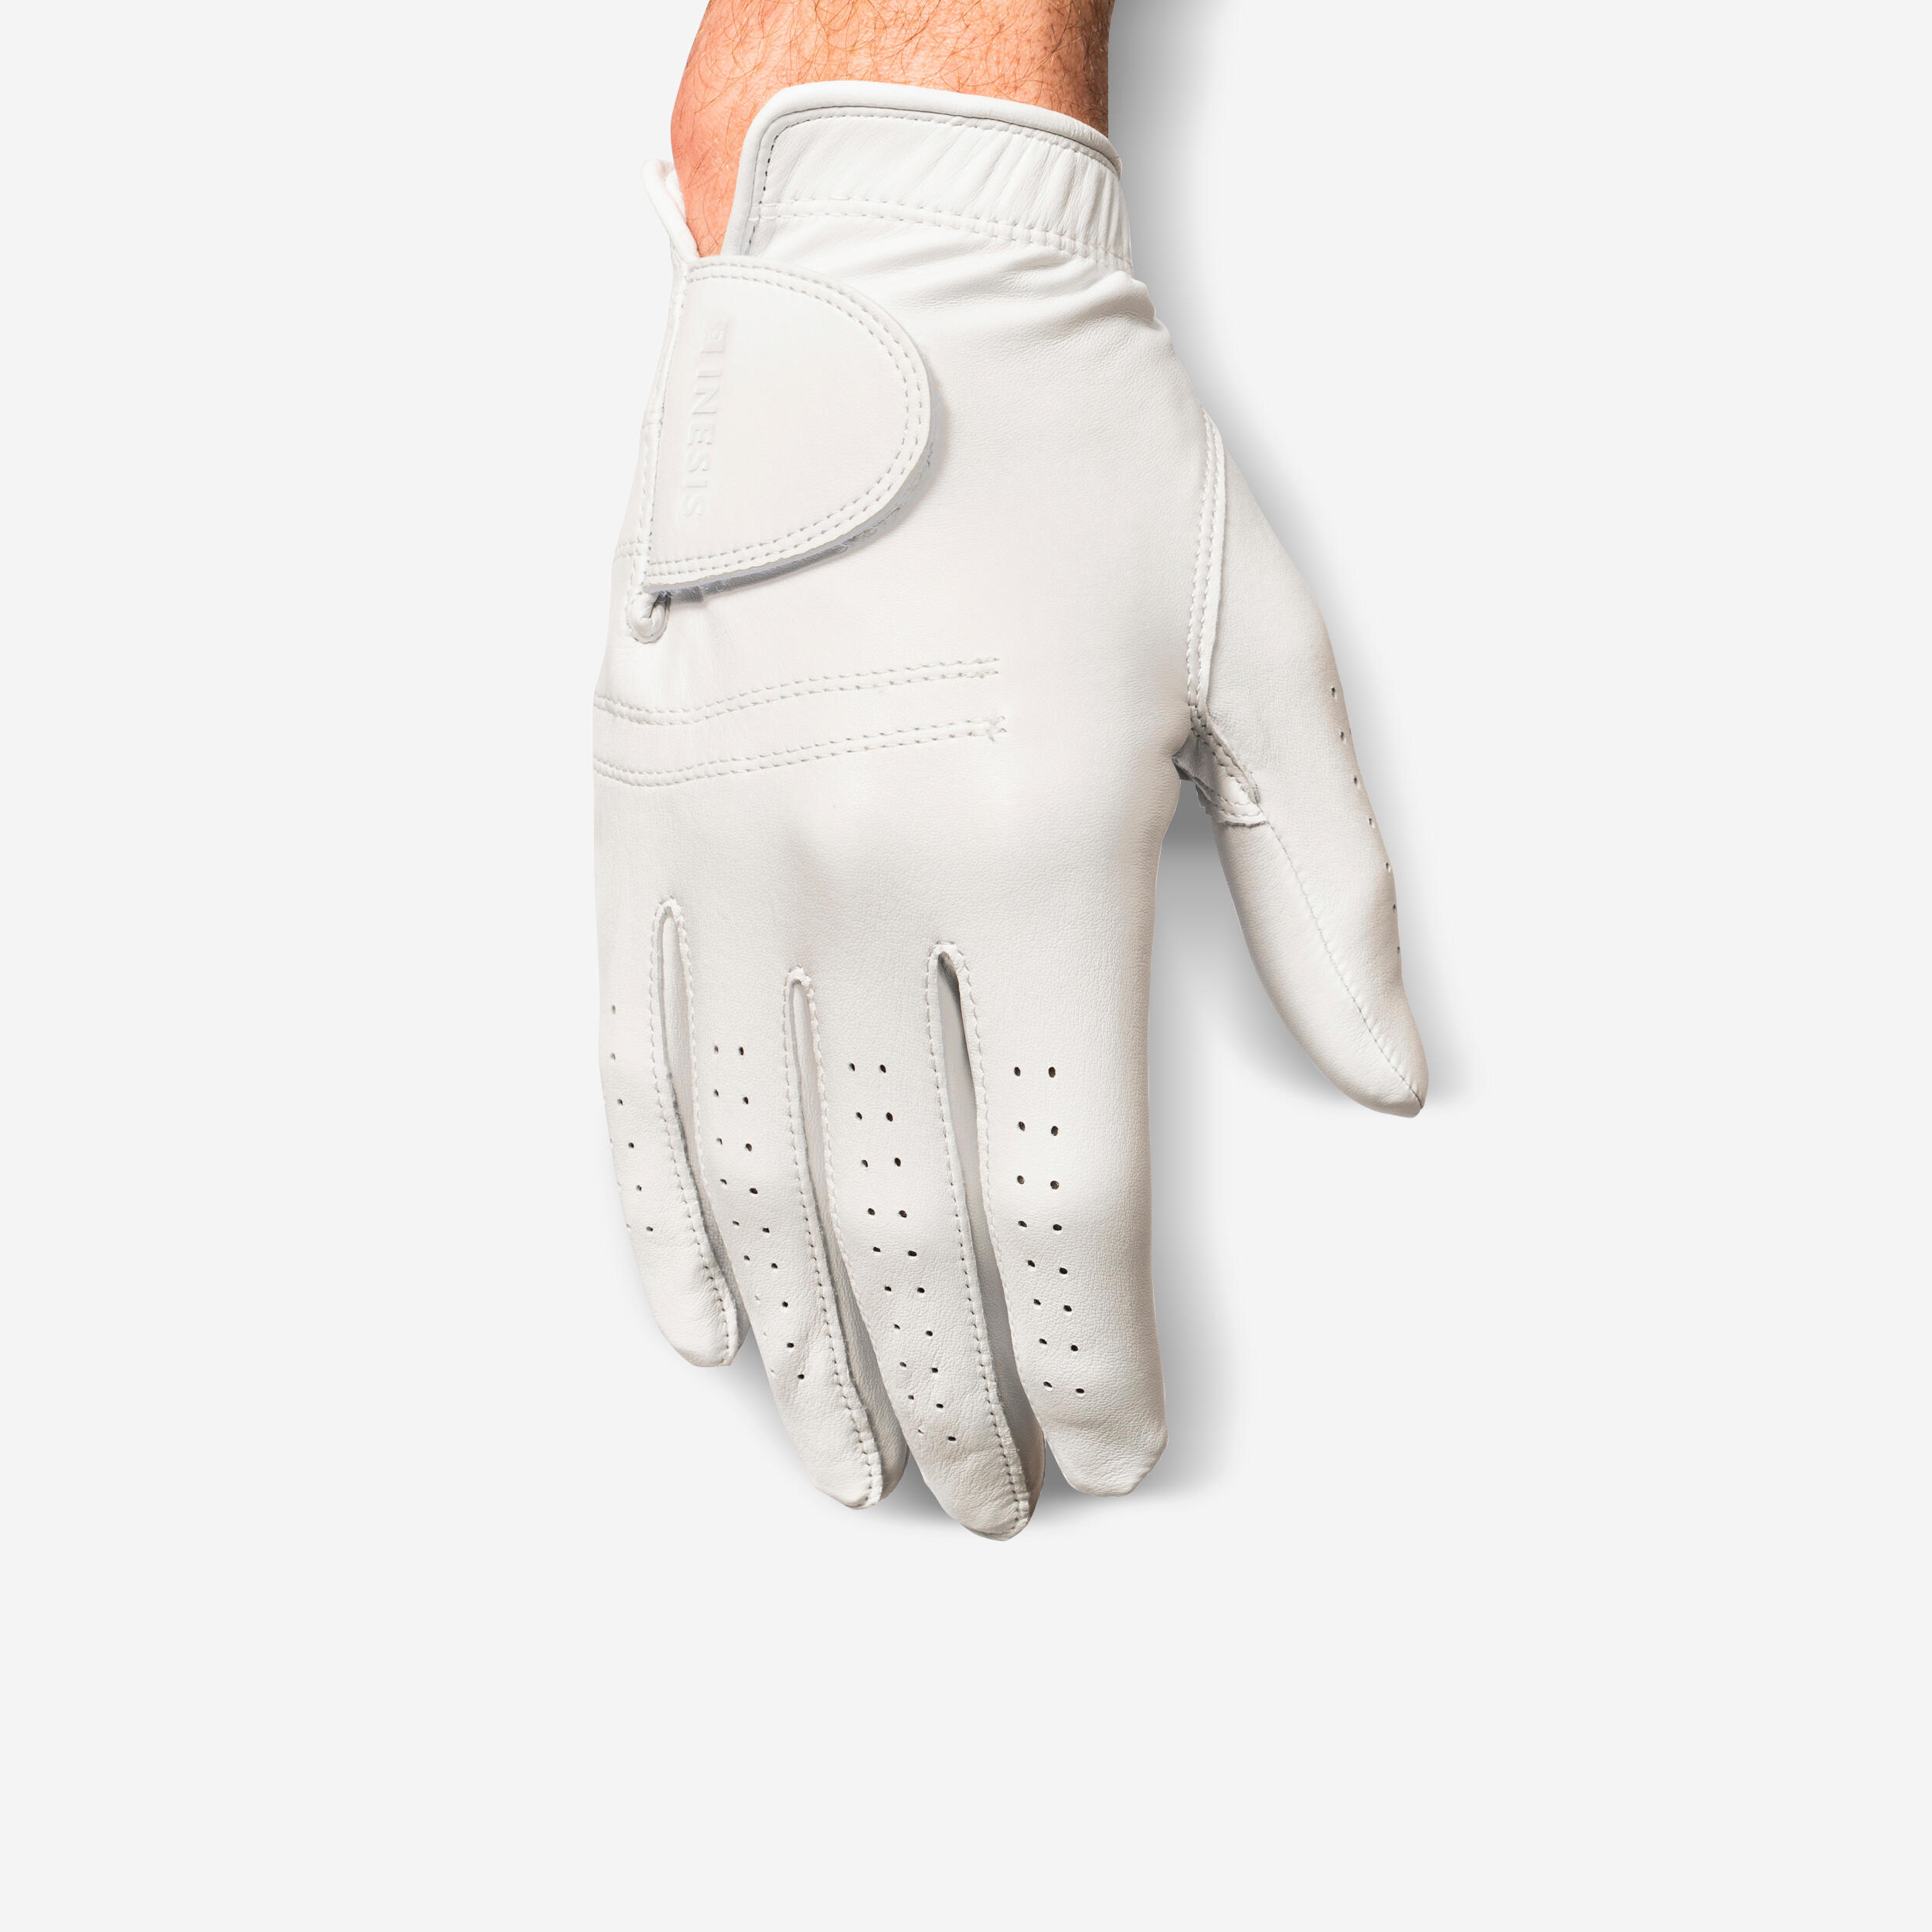 Men’s LH Cabretta Golf Glove - Tour 900 White